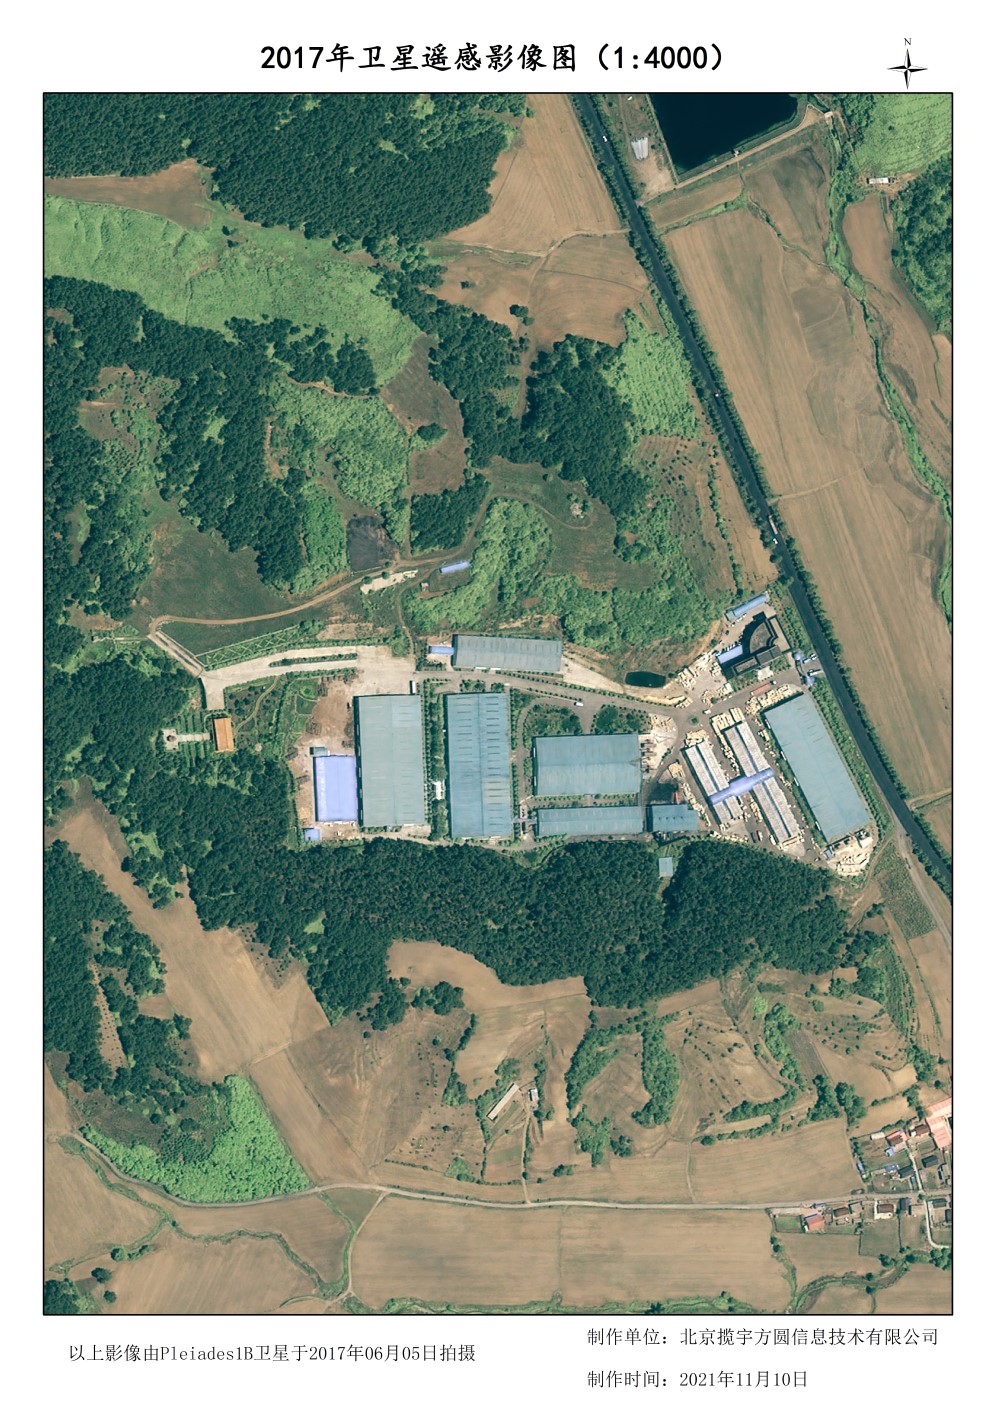 Pleiades卫星0.5米分辨率的工厂建筑影像图